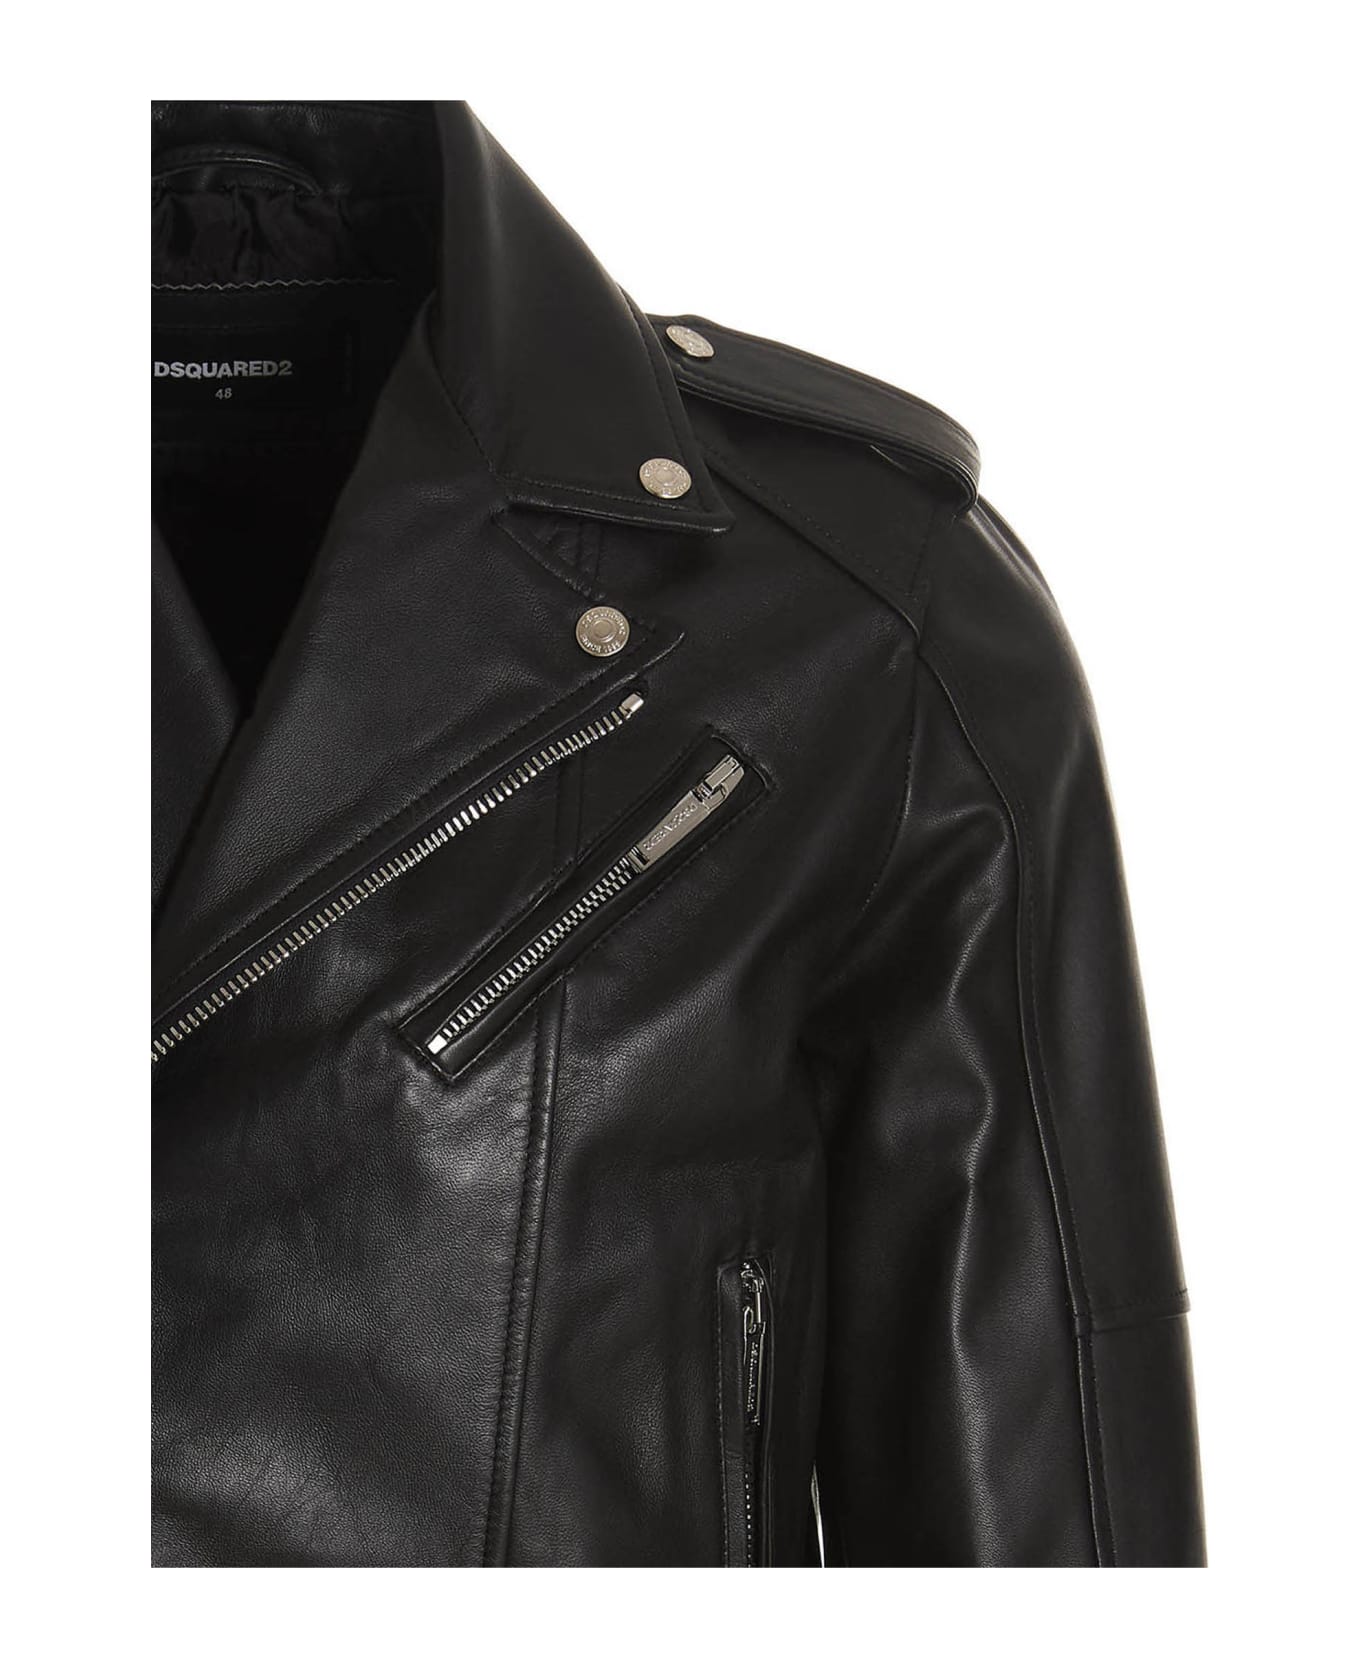 Dsquared2 Kiodo' Leather Jacket - Black レザージャケット